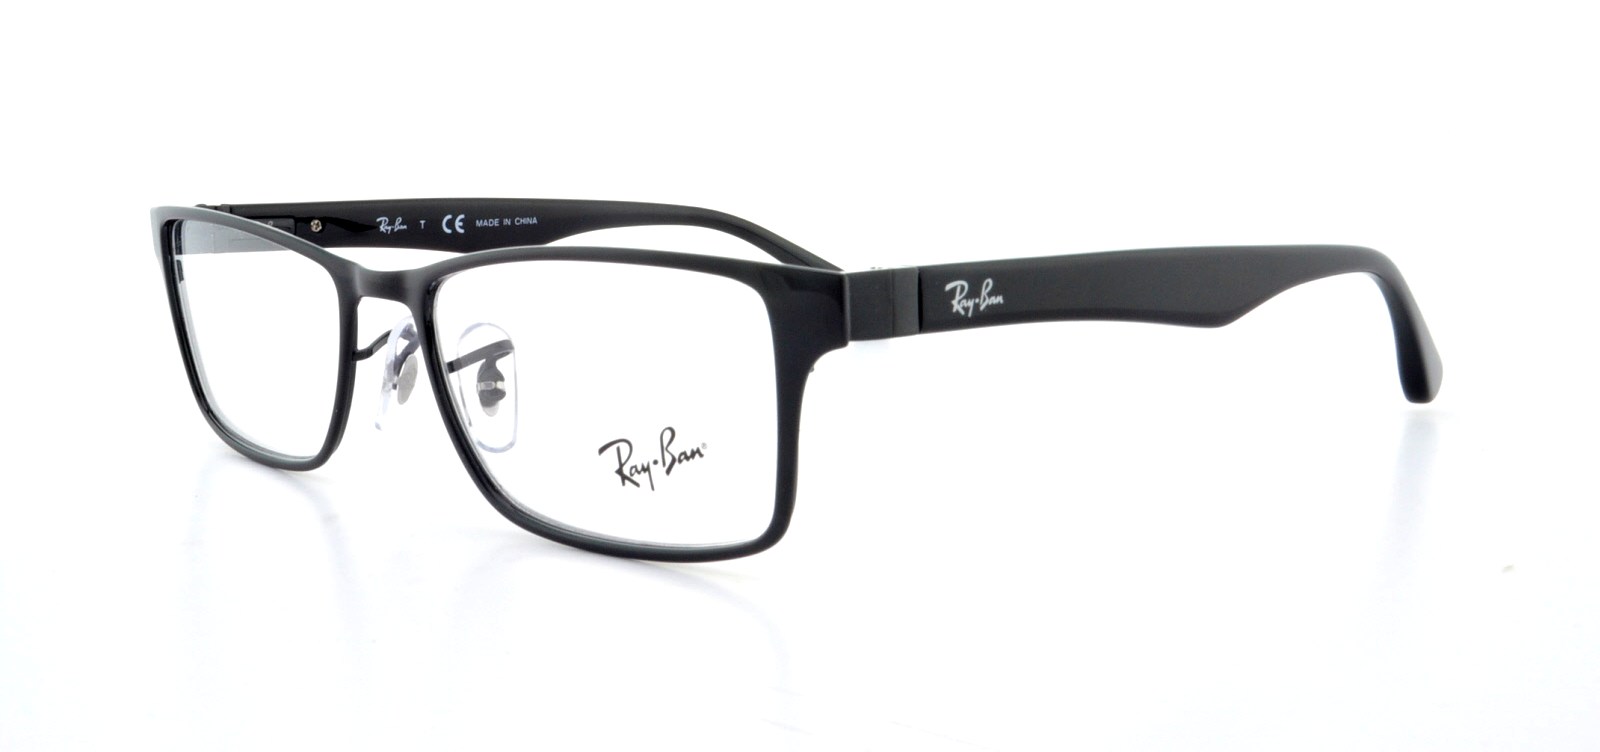 Designer Frames Outlet. Eyeglasses RX6238